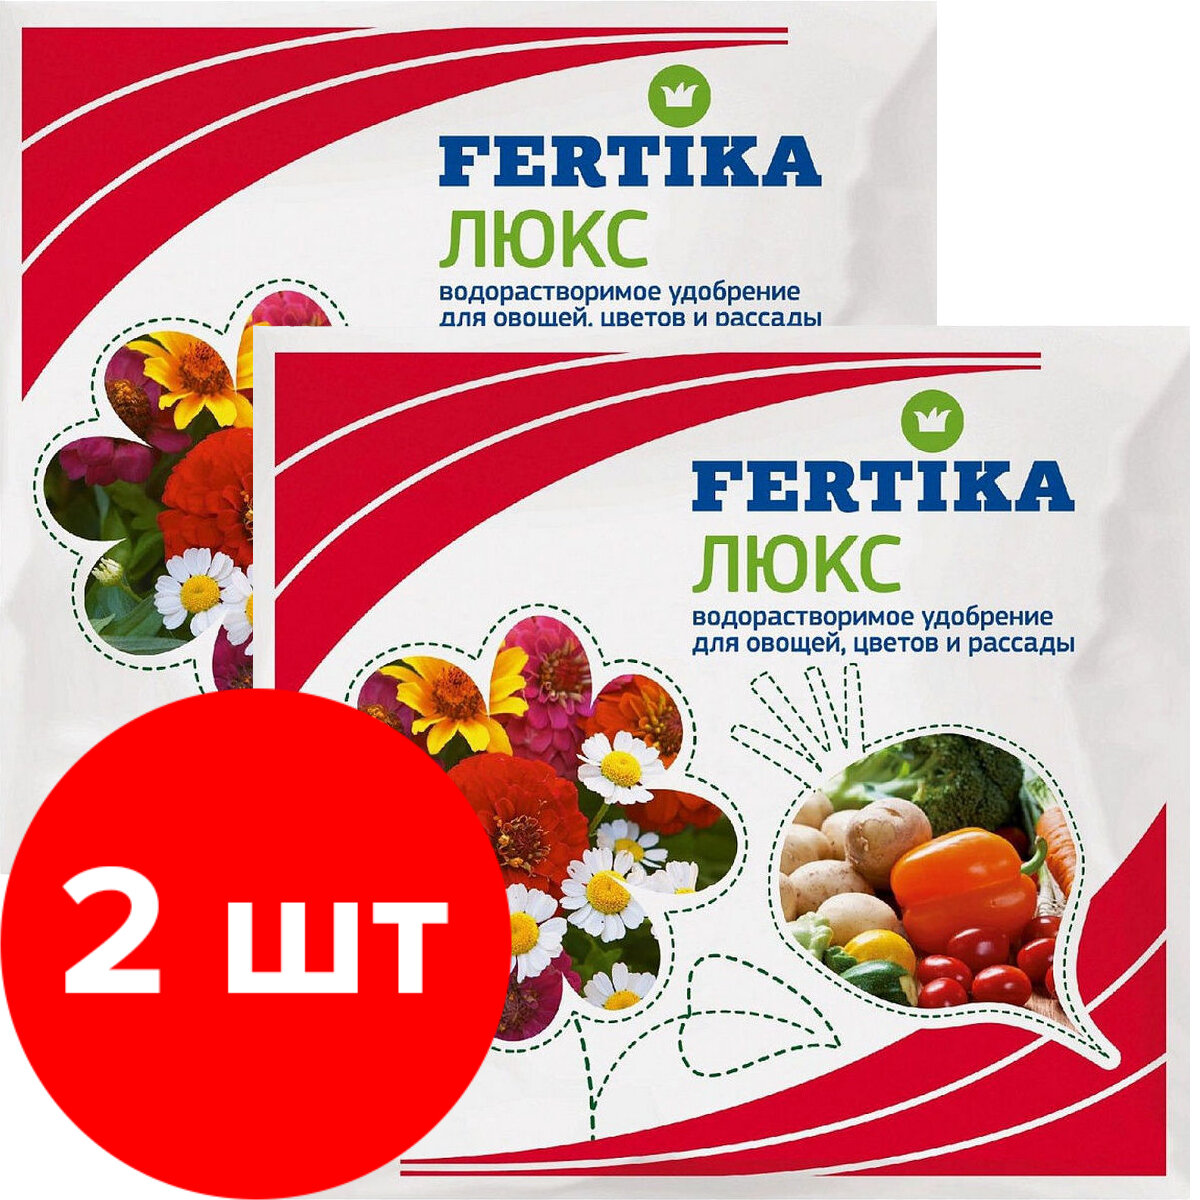 Удобрение Fertika для овощей и рассады 2 упаковки по 100 г (200гр)